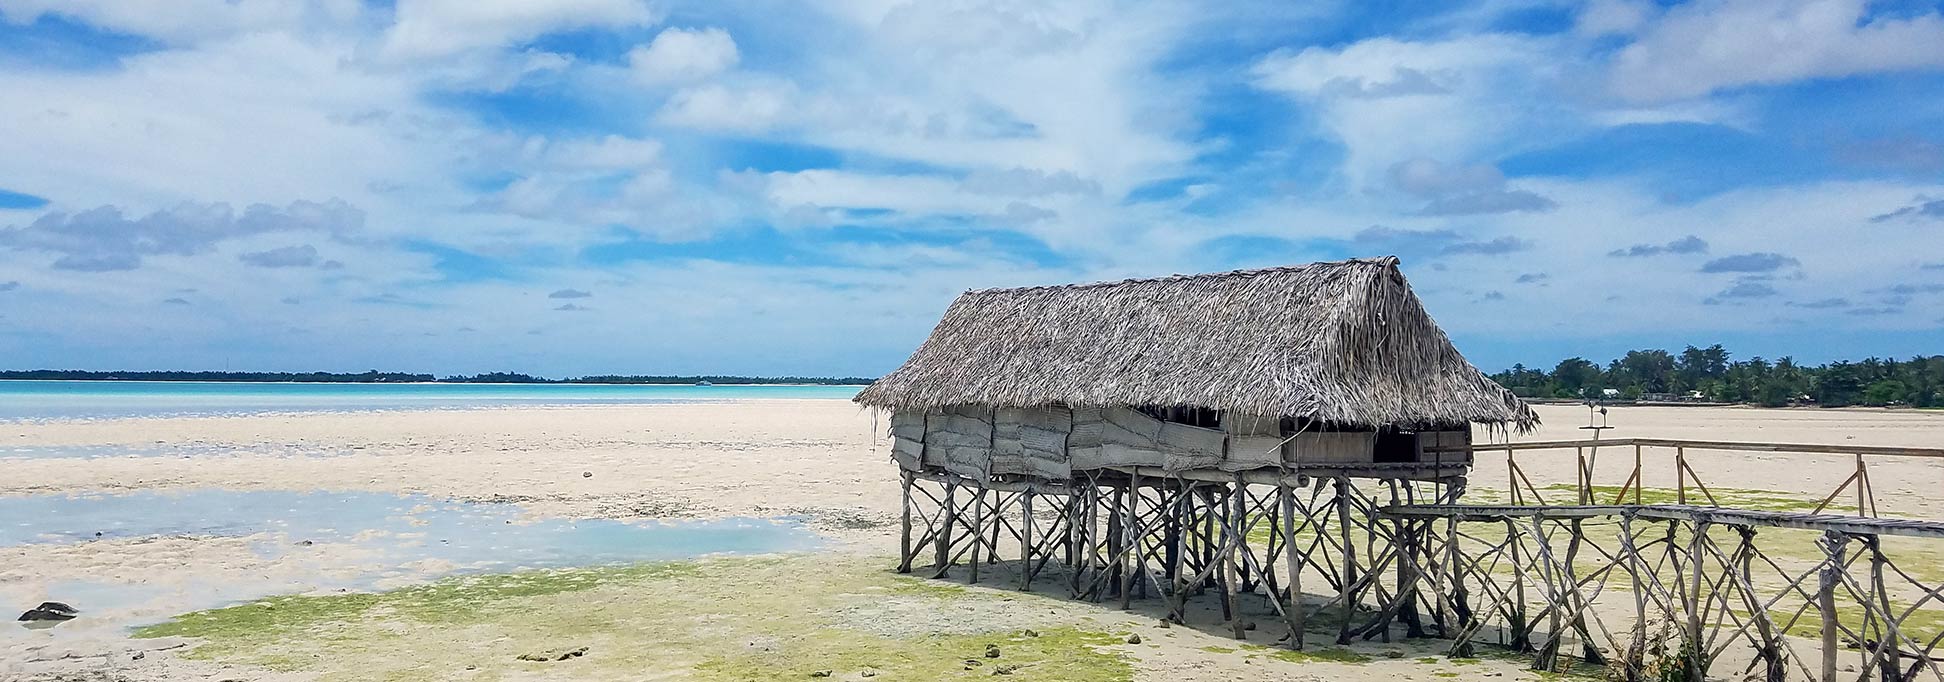 A 'te buia' hut at the beach near Bairiki